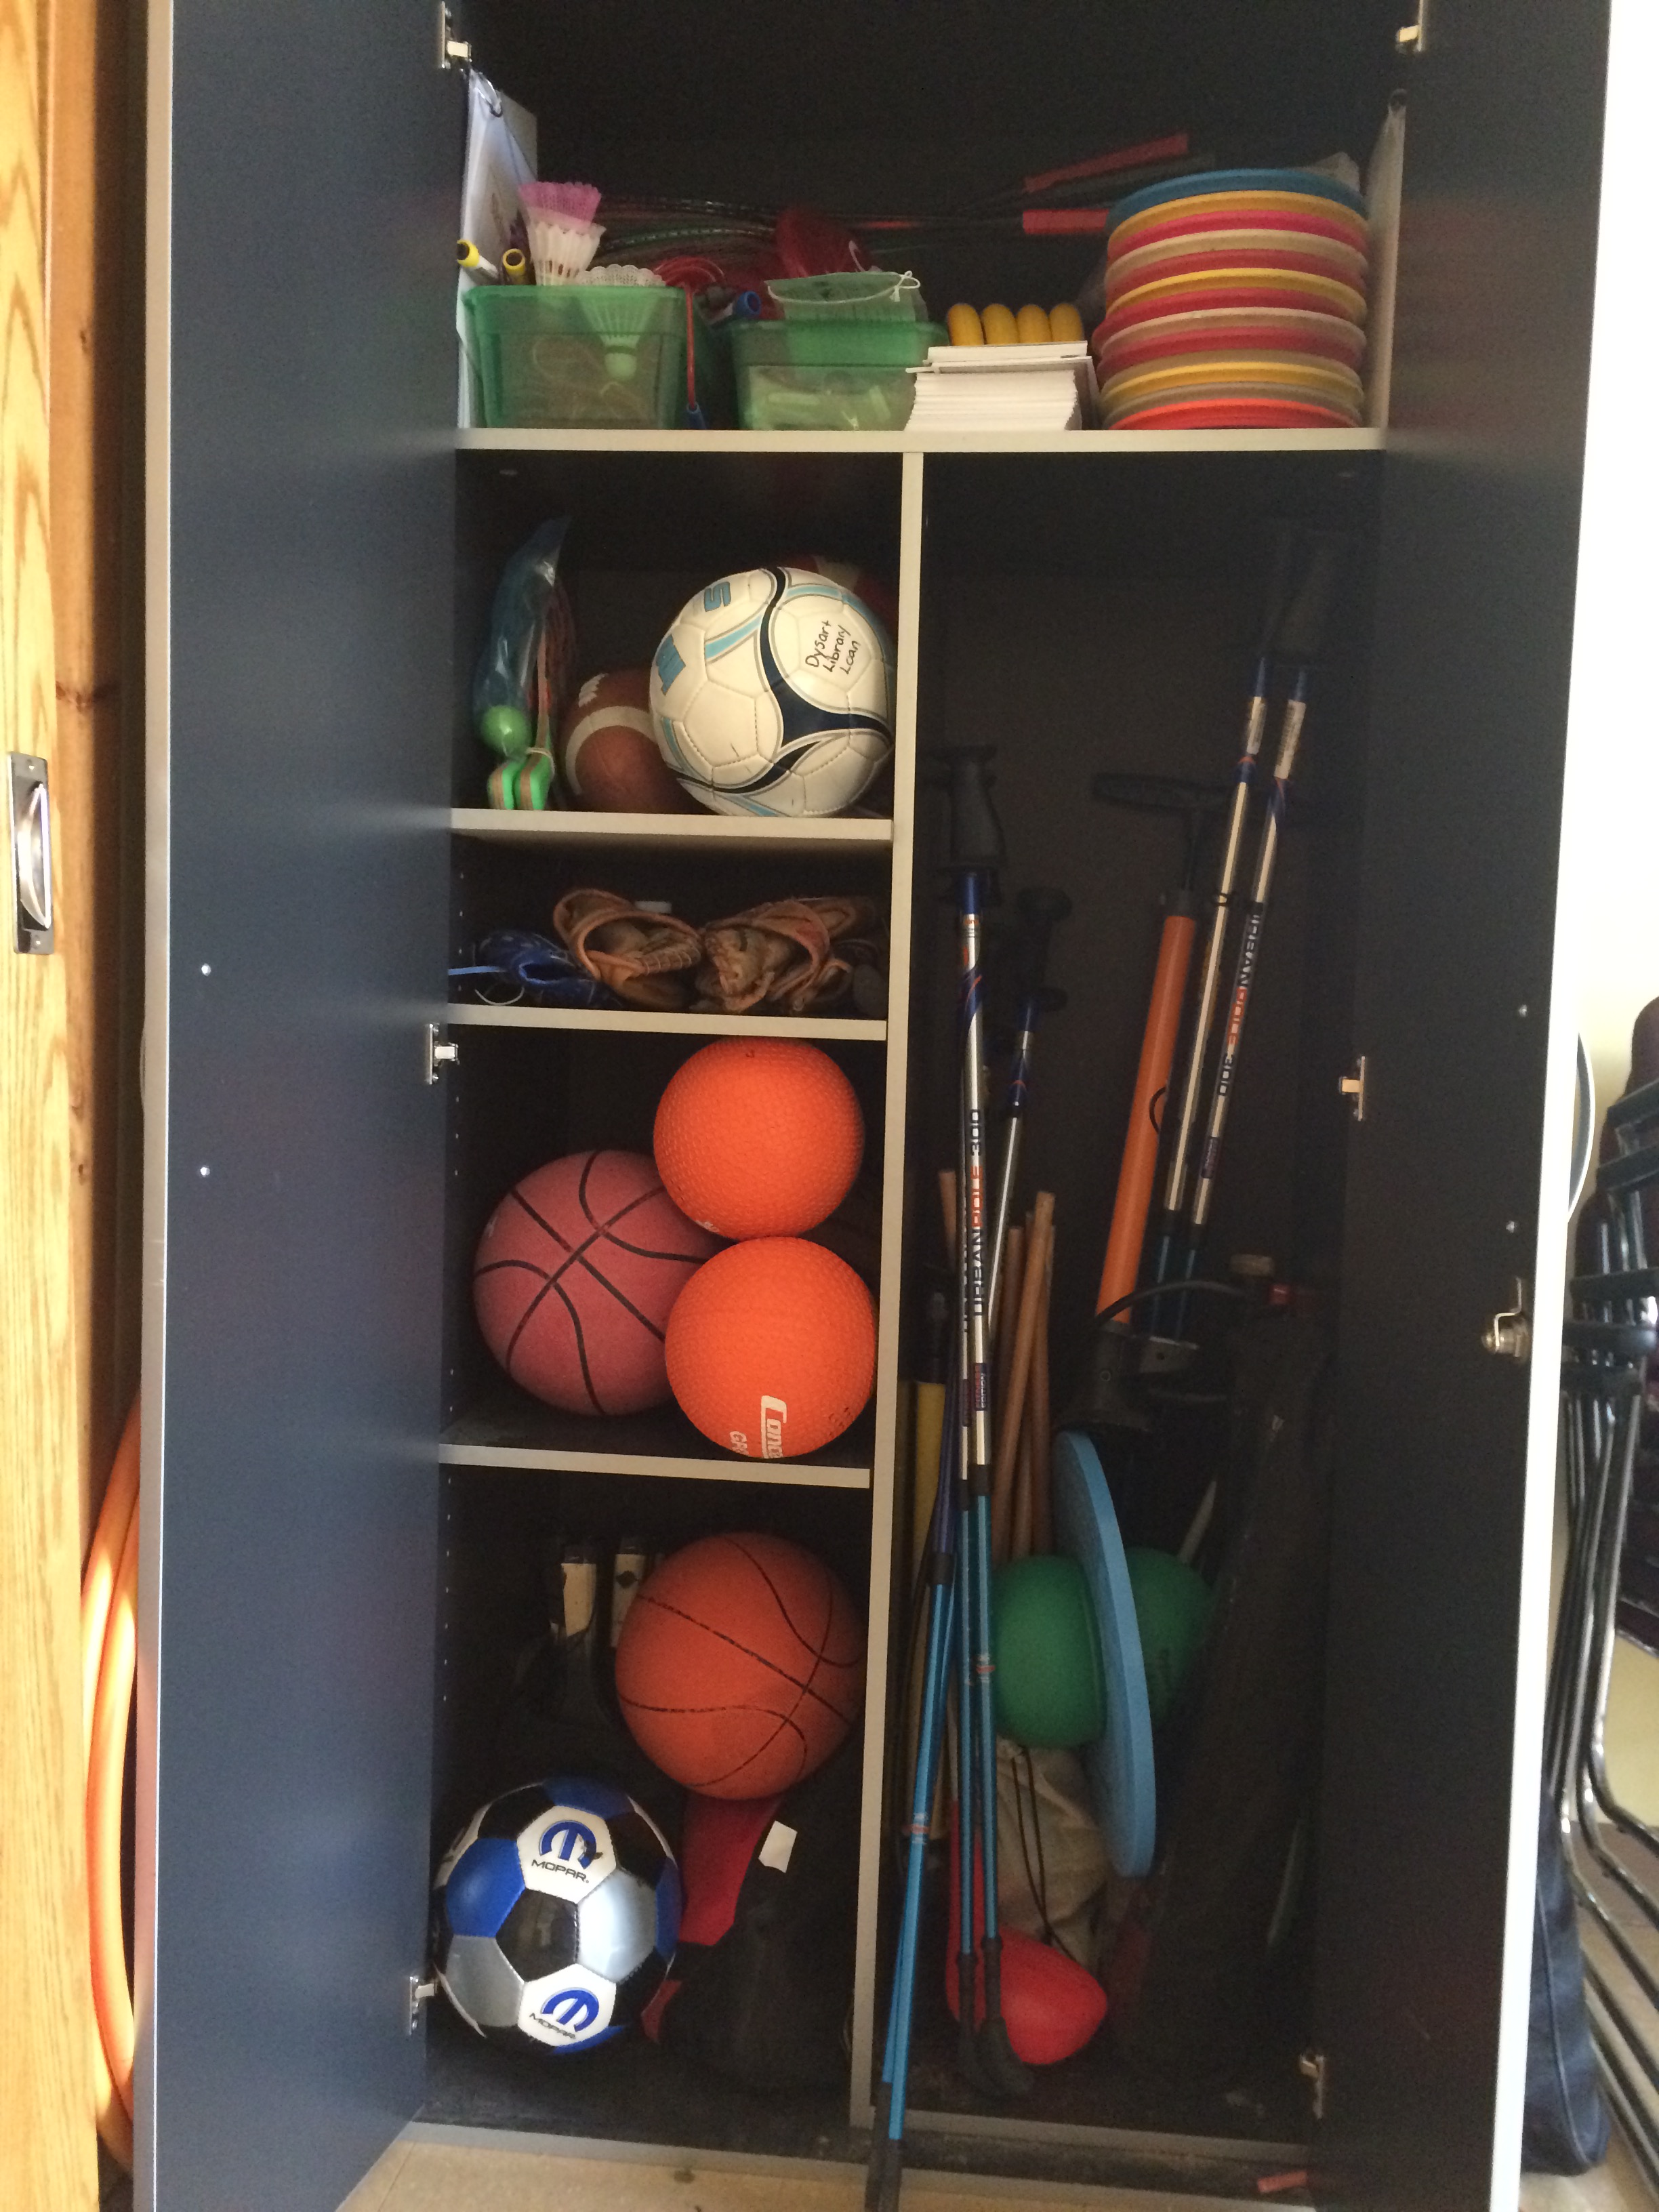 Equipment inside the loan cupboard.